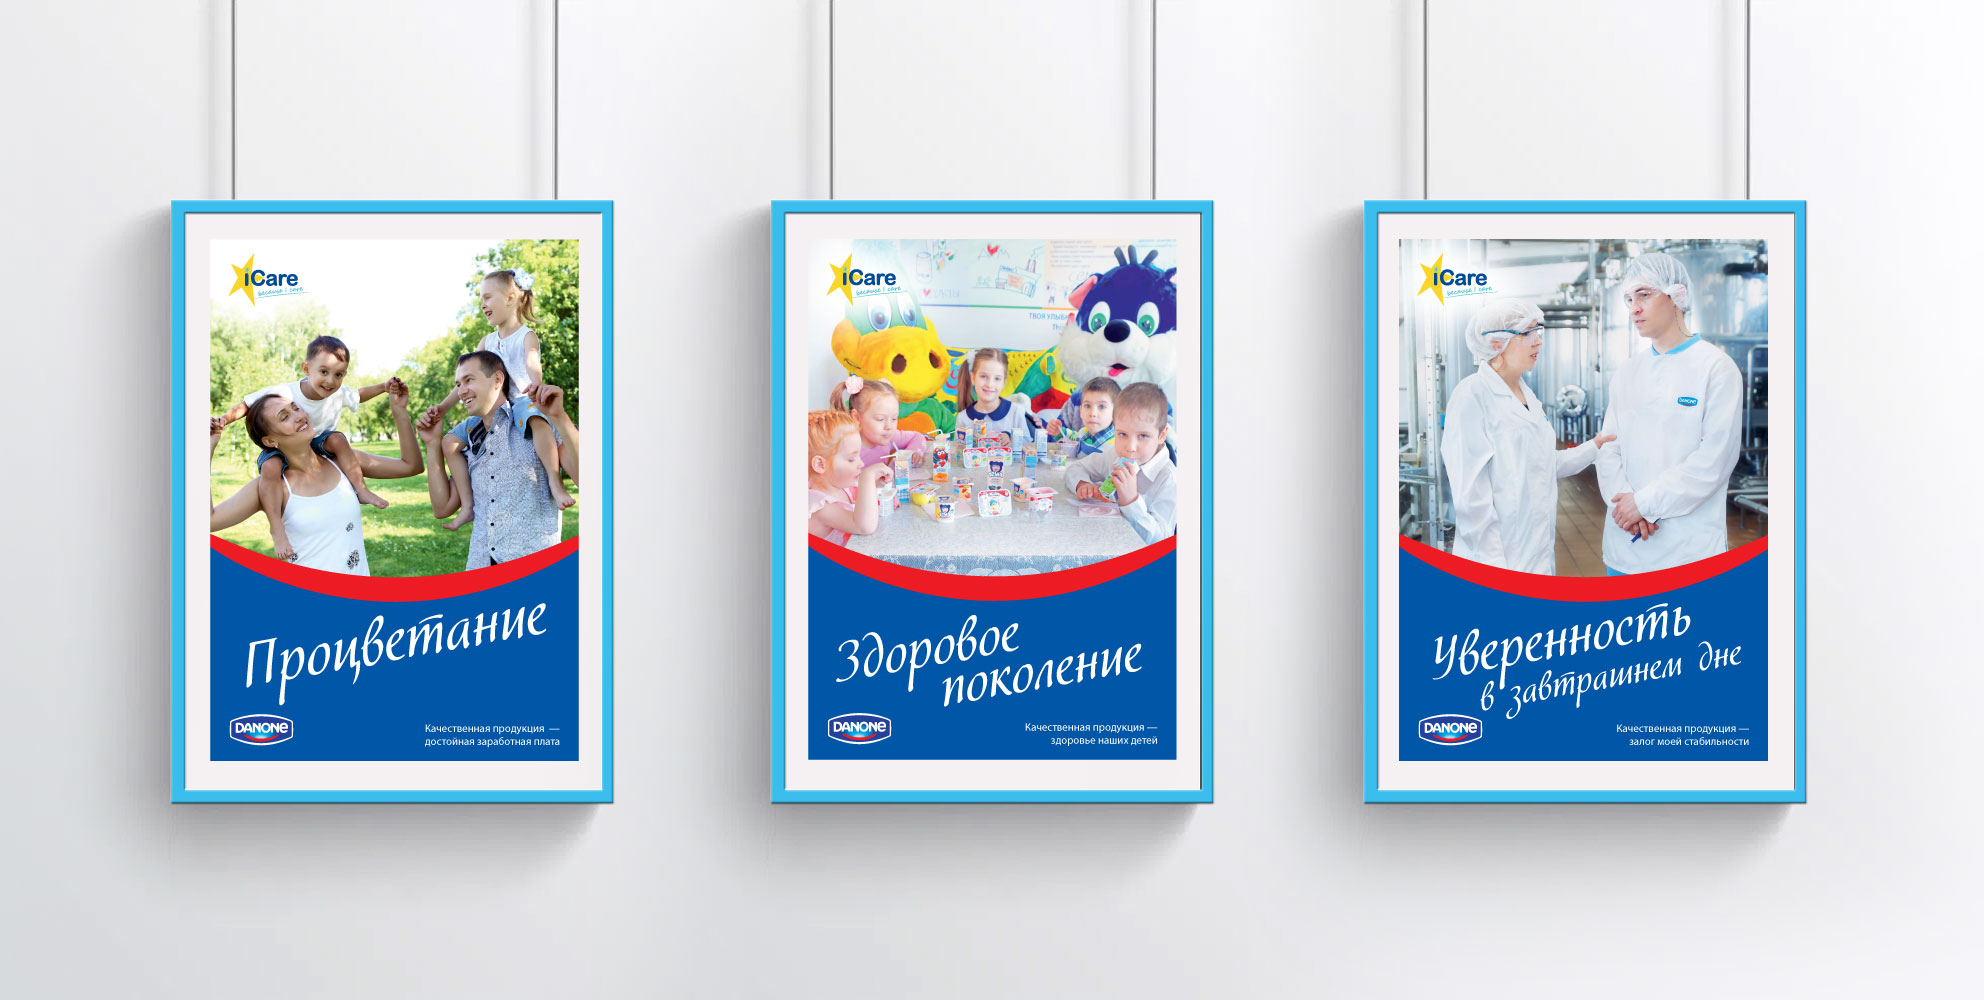 Дизайн плакатов для Danone